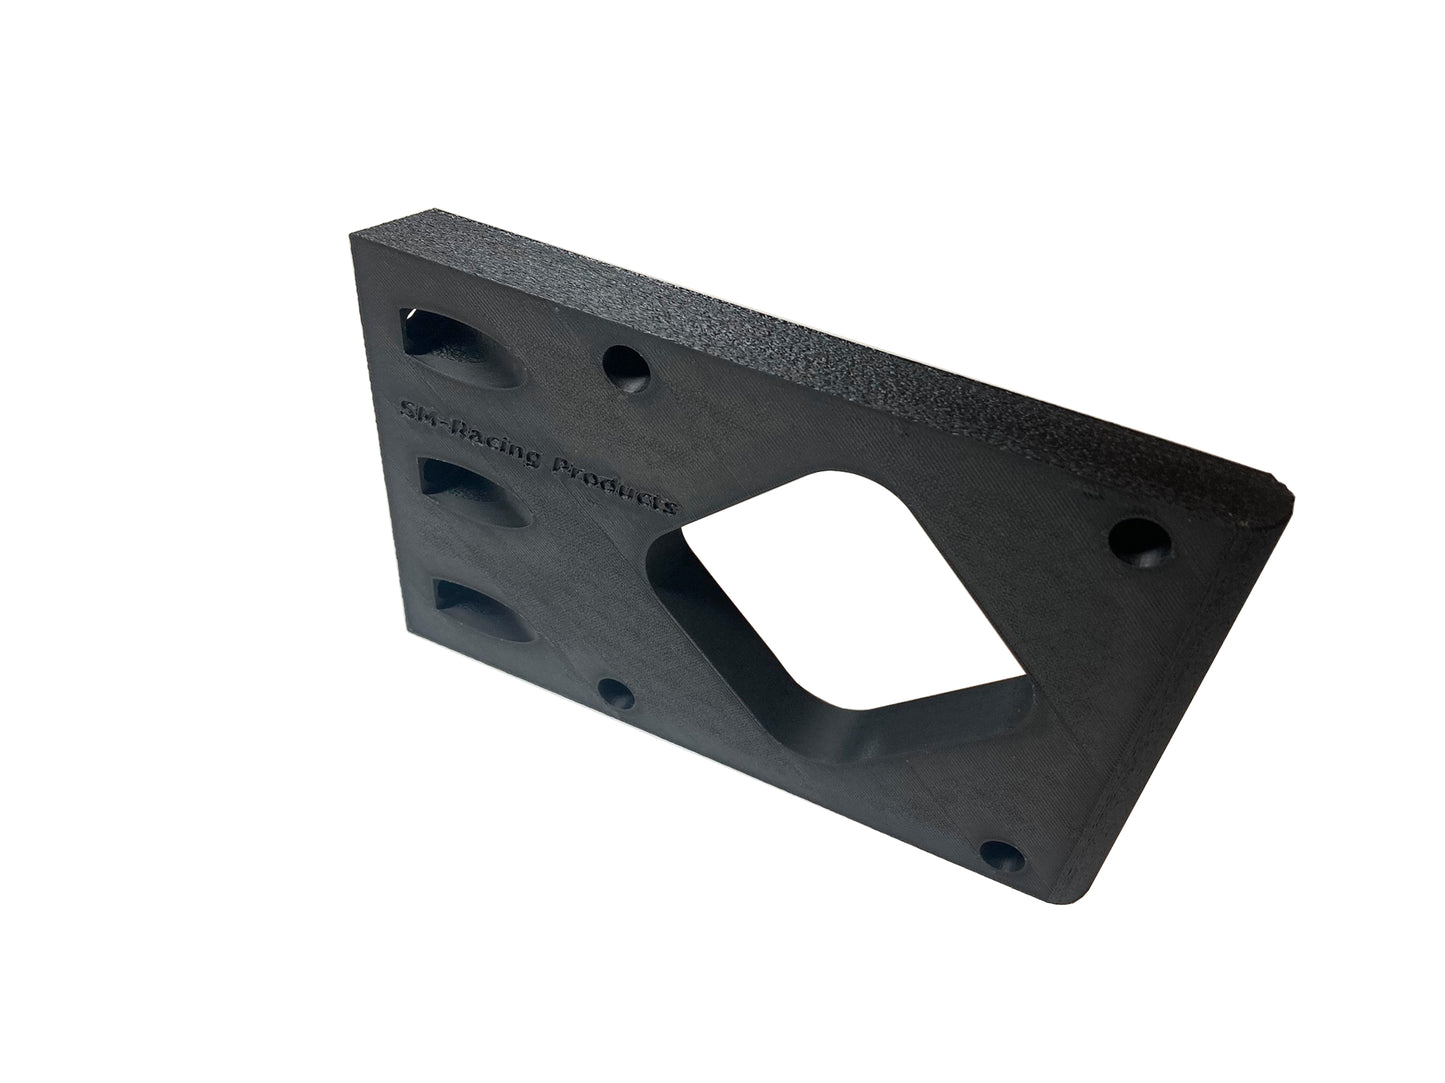 Placa de montaje lateral para extrusión de aluminio según VESA 